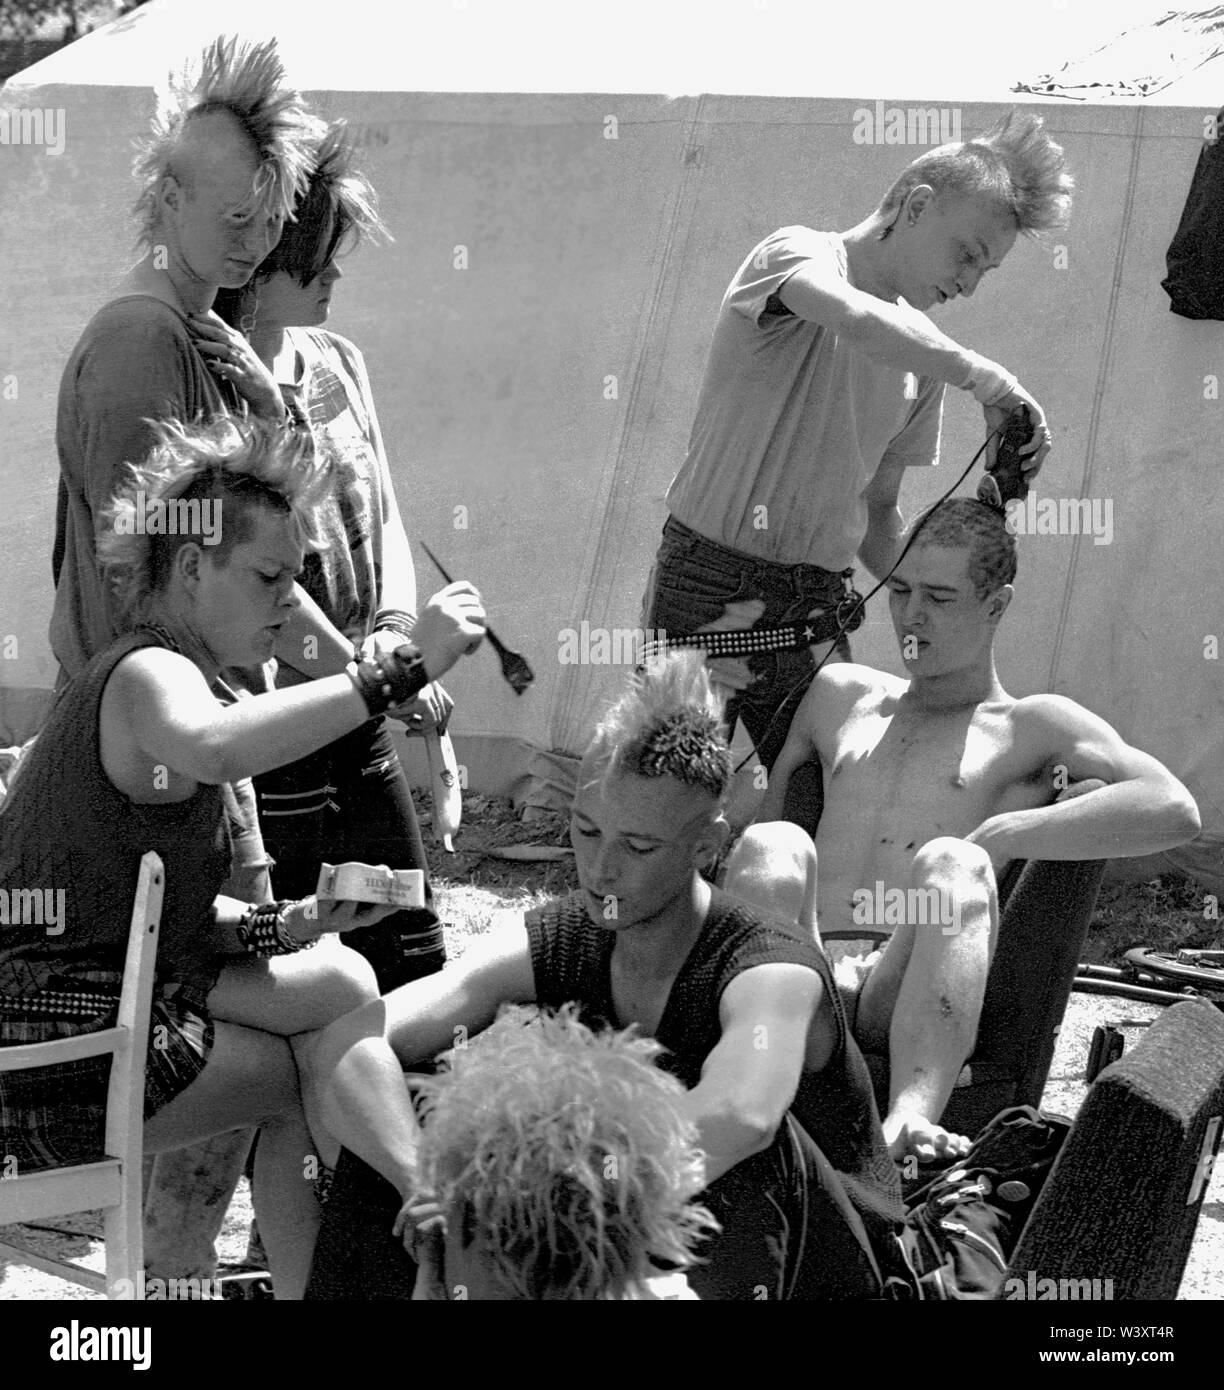 Archiviato - 01 gennaio 1983, Berlin: Berlin-Bezirke / Kreuzberg / 7 / 1983 a Berlino molte delle case accovacciata vengono evacuati, compresa quella di questi punkers. Essi sono il campeggio a Mariannenplatz in segno di protesta. La cura del corpo è scritto in lettere maiuscole. Ogni giorno un nuovo colore per i capelli // La gioventù / squatter / squatter / appartamento / Politica / distretti / Punk / punk Foto: Paul Glaser/dpa-Zentralbild/ZB Foto Stock